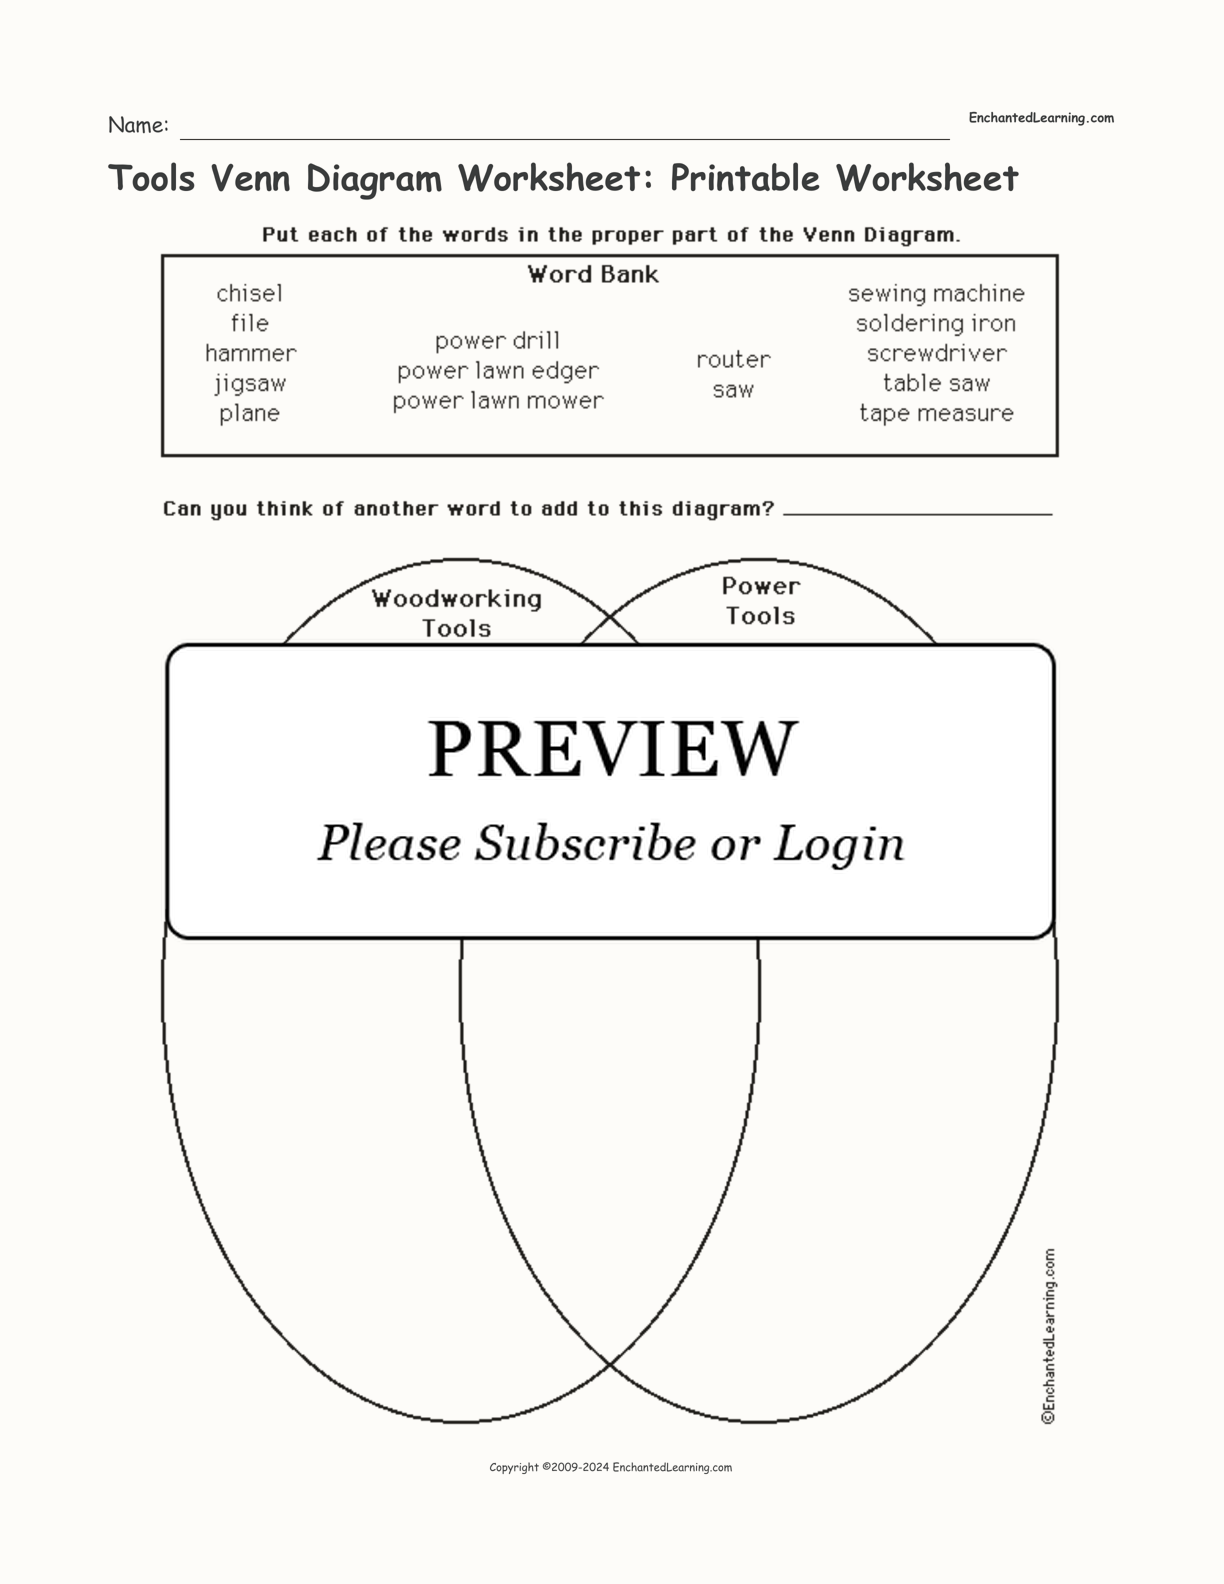 Tools Venn Diagram Worksheet: Printable Worksheet interactive worksheet page 1